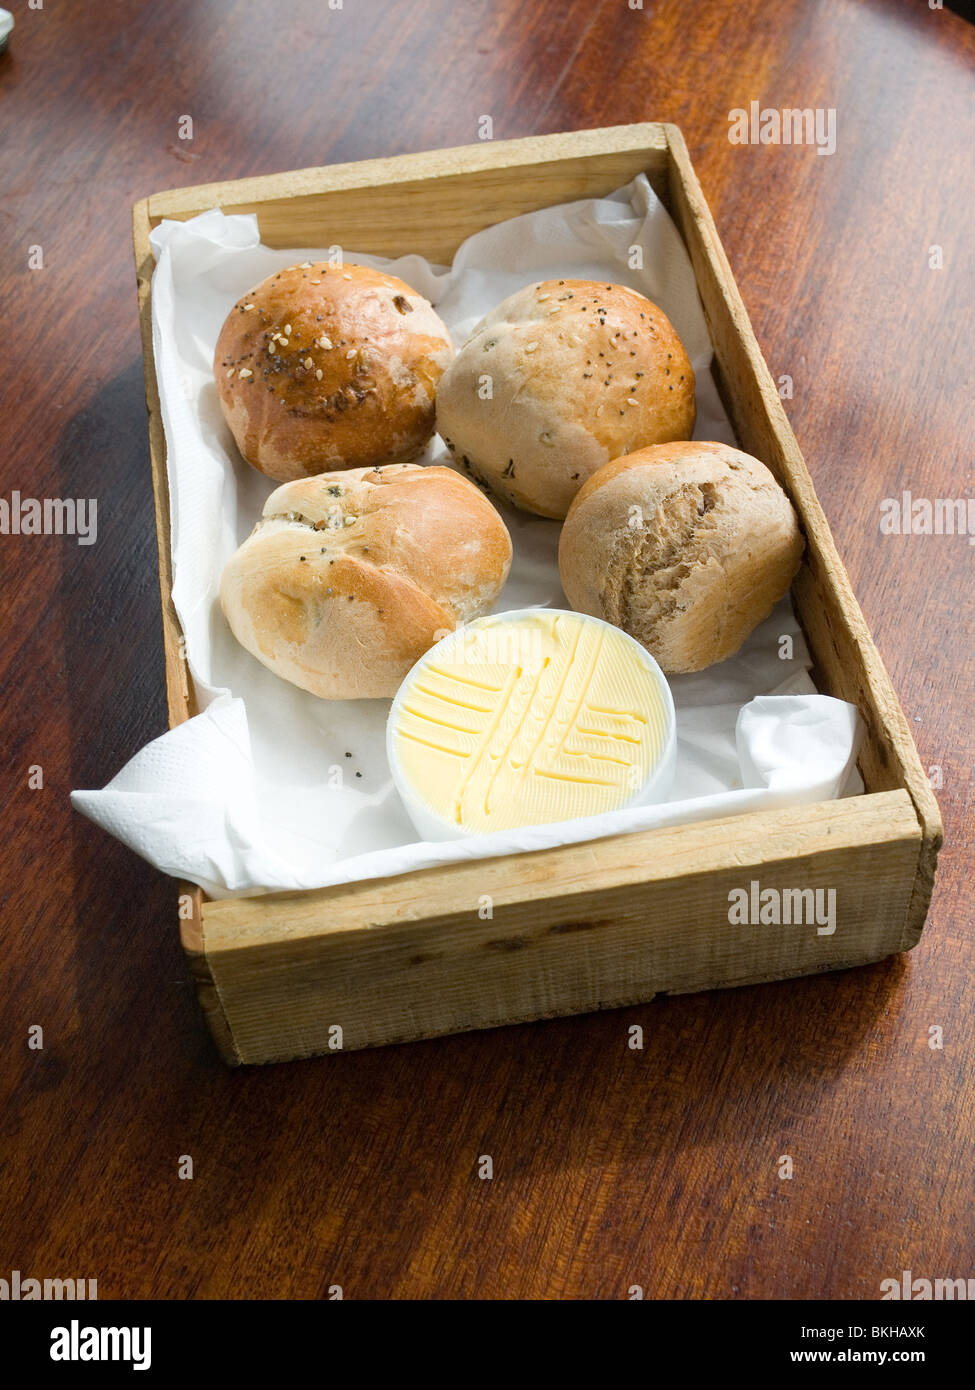 Comida de pub pijo rollos de pan y mantequilla, servido en una caja de madera Foto de stock